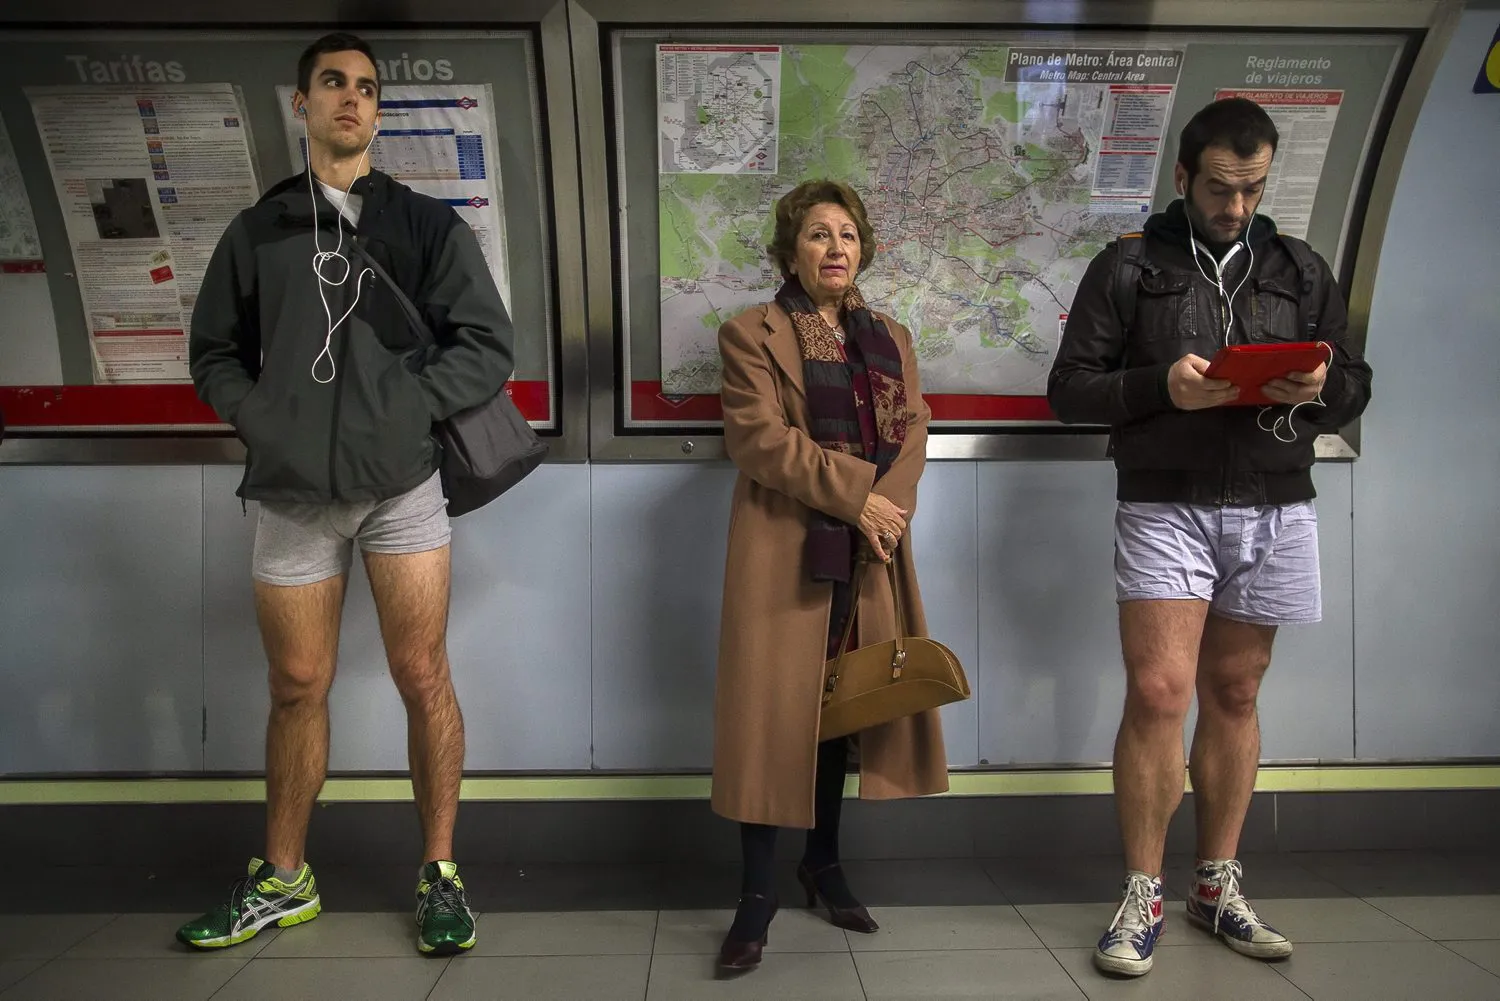 Остался без штанов. No Pants Subway Ride 2014. Джон Туртурро без штанов в трансформерах. В метро без штанов.